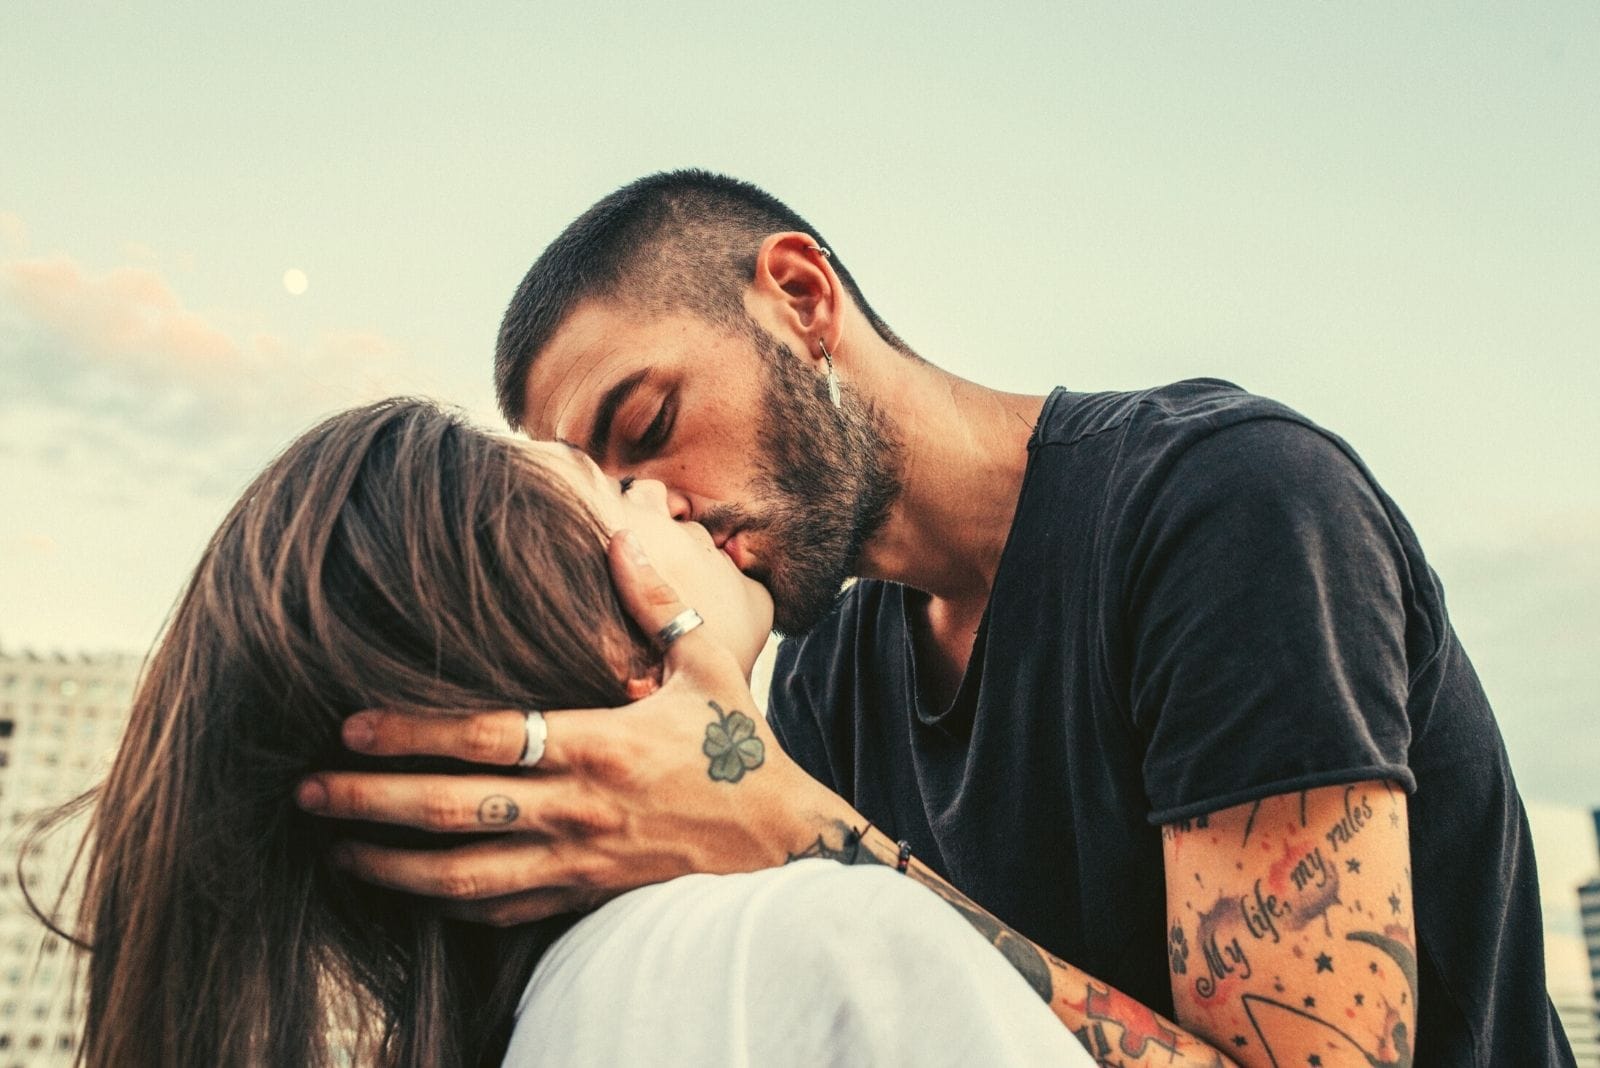 una giovane coppia felice che si bacia appassionatamente all'aperto con le braccia del ragazzo sul viso della donna